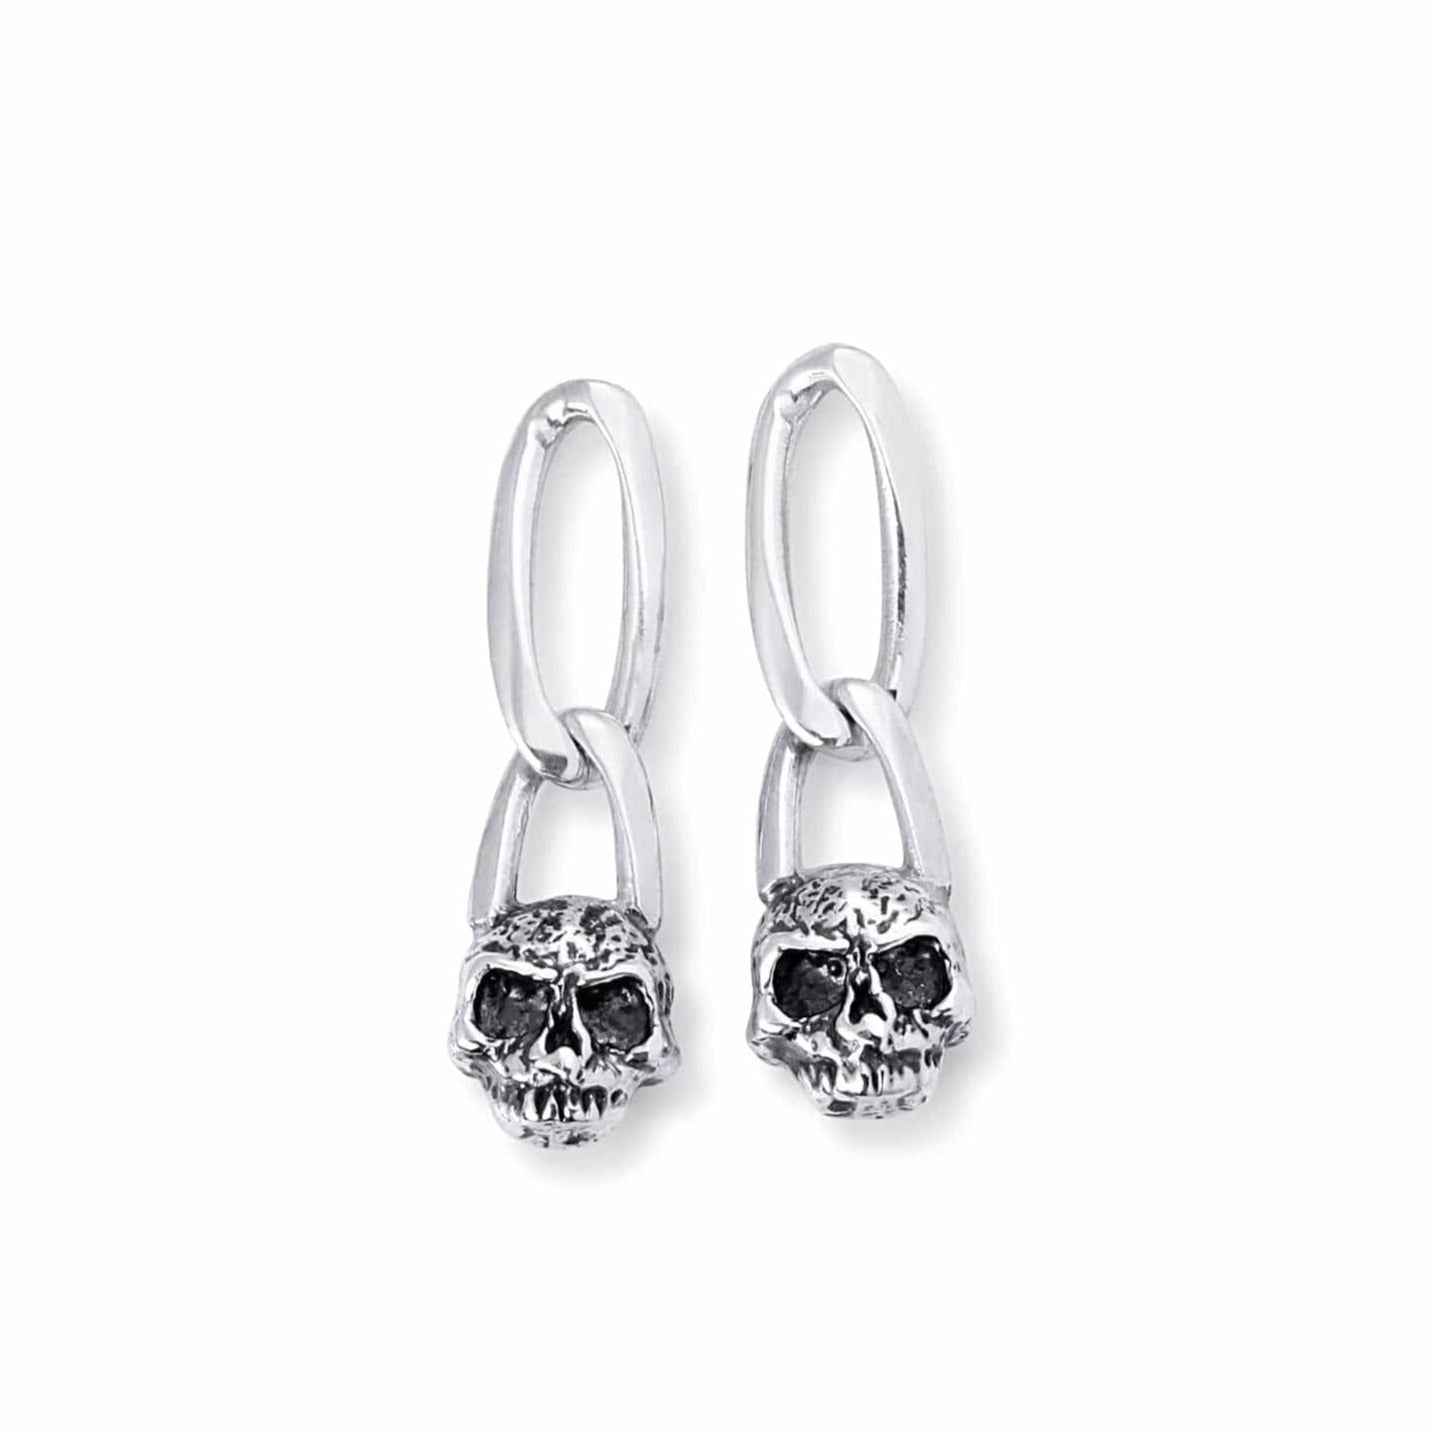 Bloodline Design Earrings Figaro Skull Earrings